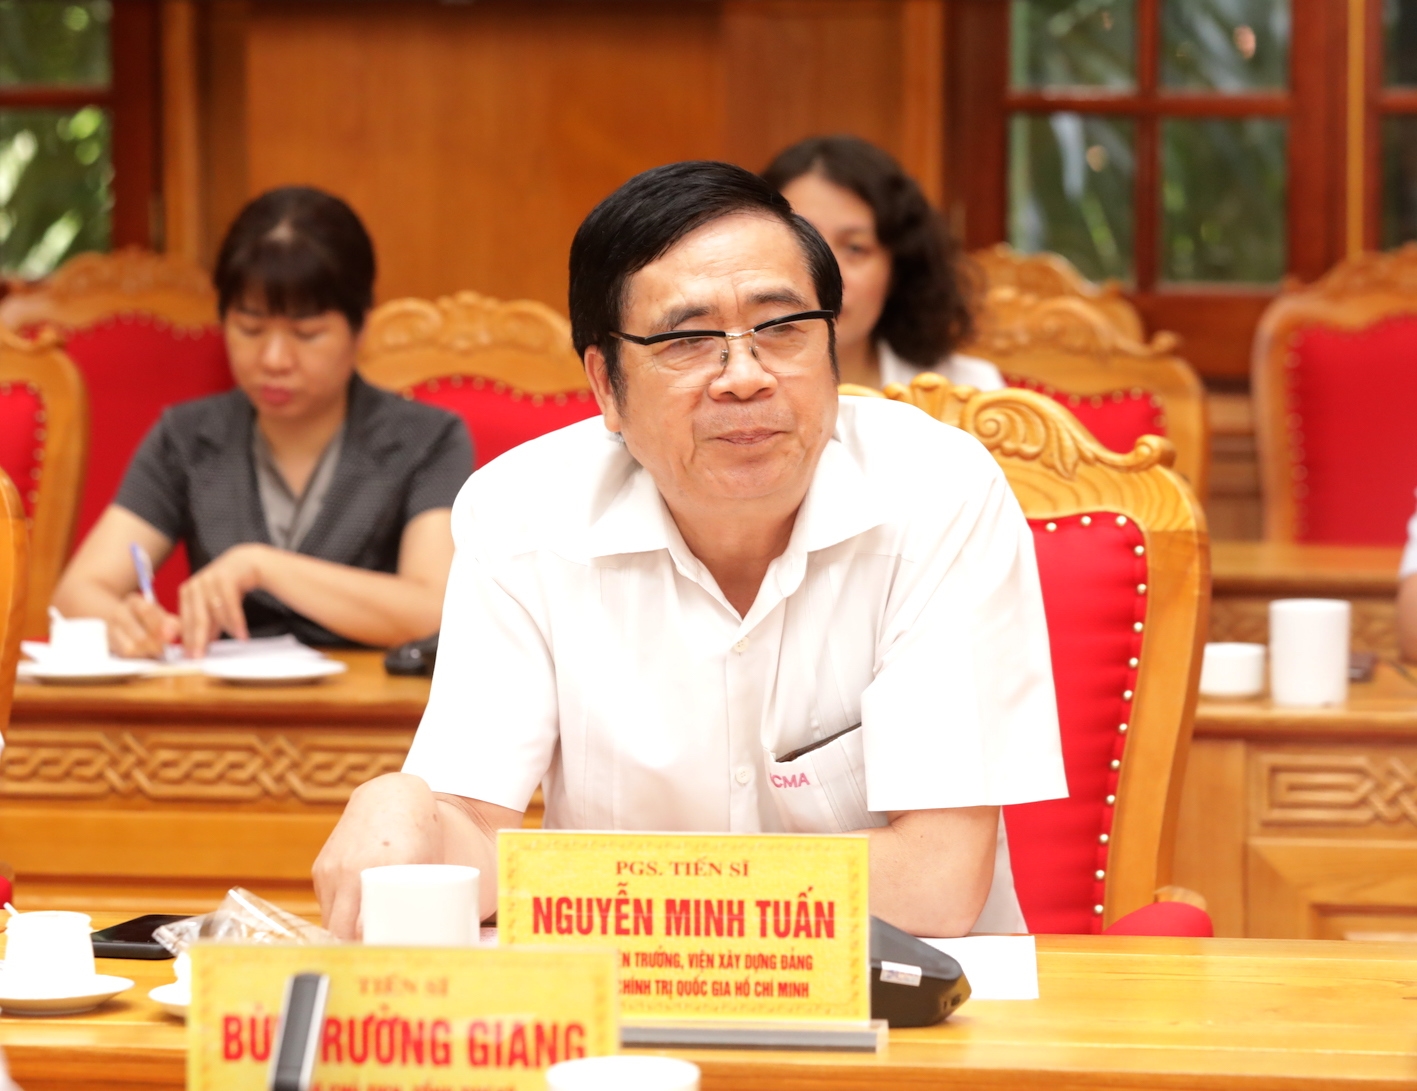 PGS. TS Nguyễn Minh Tuấn, nguyên Viện trưởng Viện Xây dựng Đảng, Học viện Chính trị Quốc gia Hồ Chí Minh.